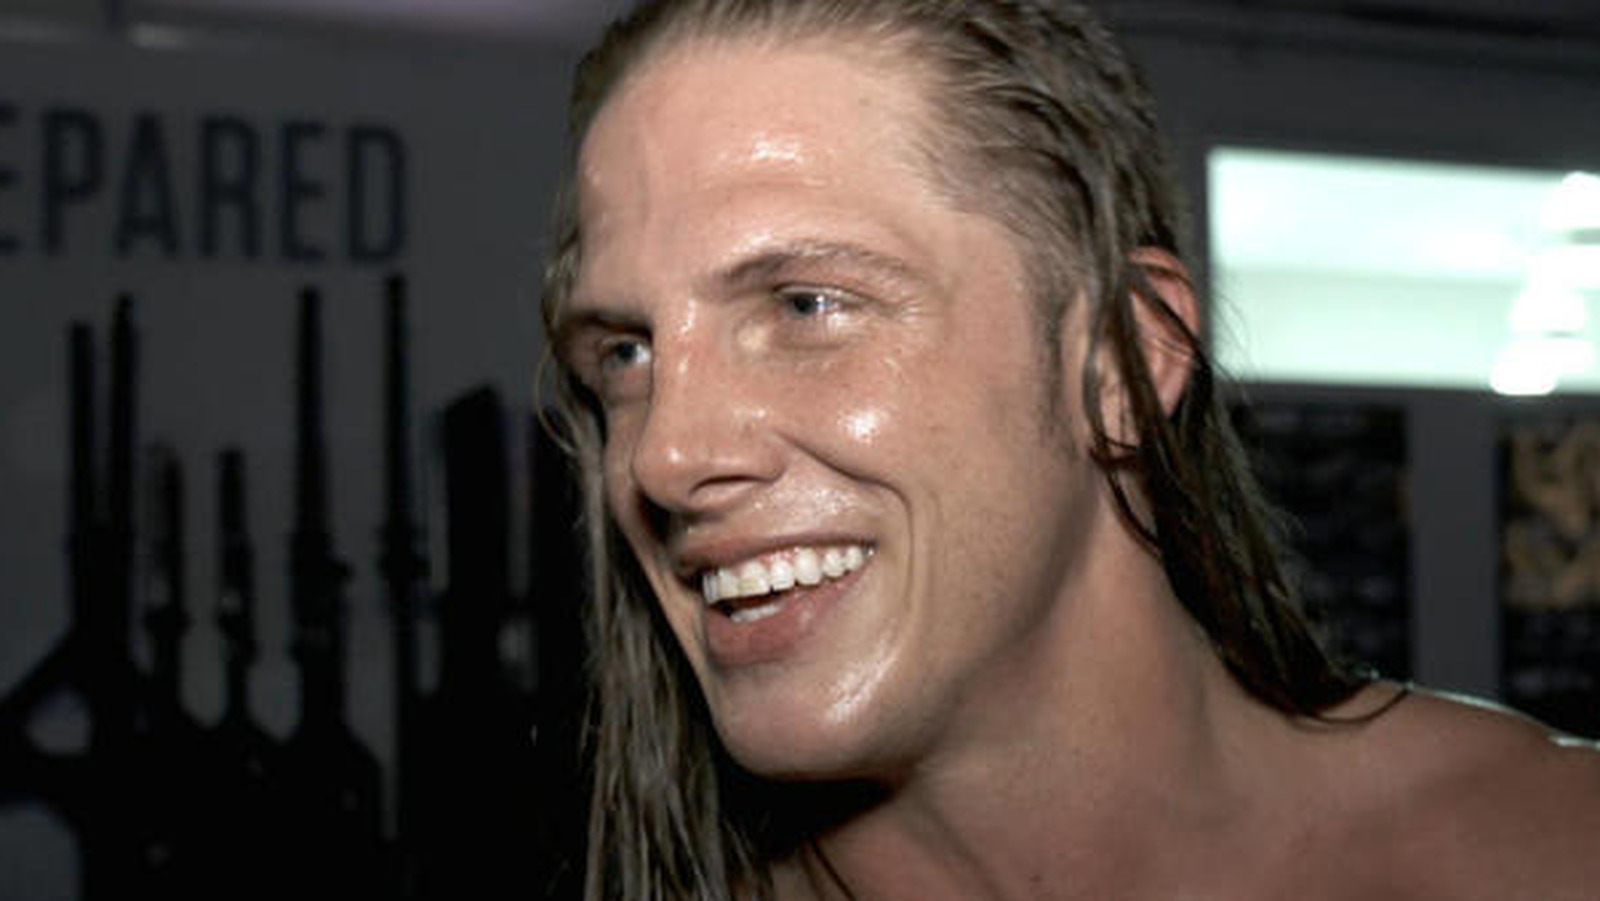 Matt Riddle habla de una posible lucha libre para TNA o AEW